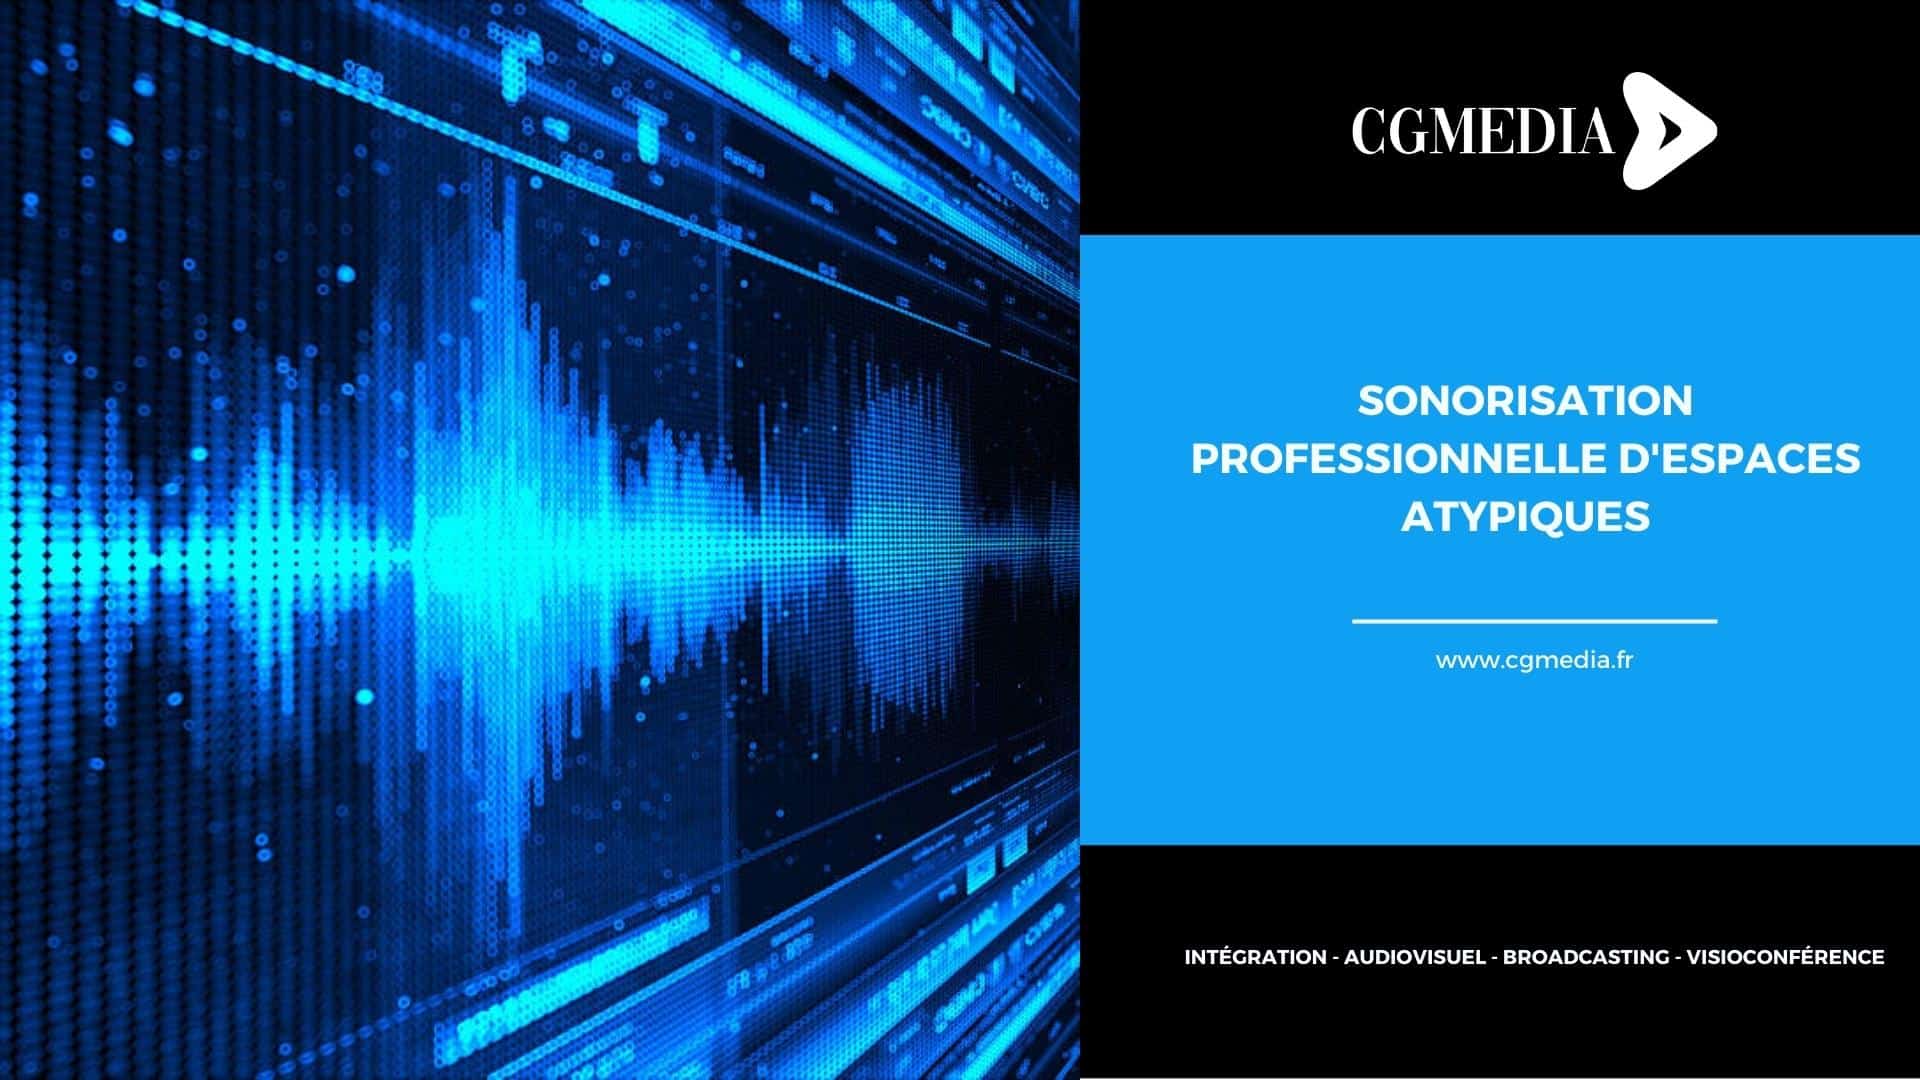 Sonorisation professionnelle d'espaces atypiques - CGMEDIA Expert en  Intégration Audiovisuelle - Visioconférence - Broadcasting